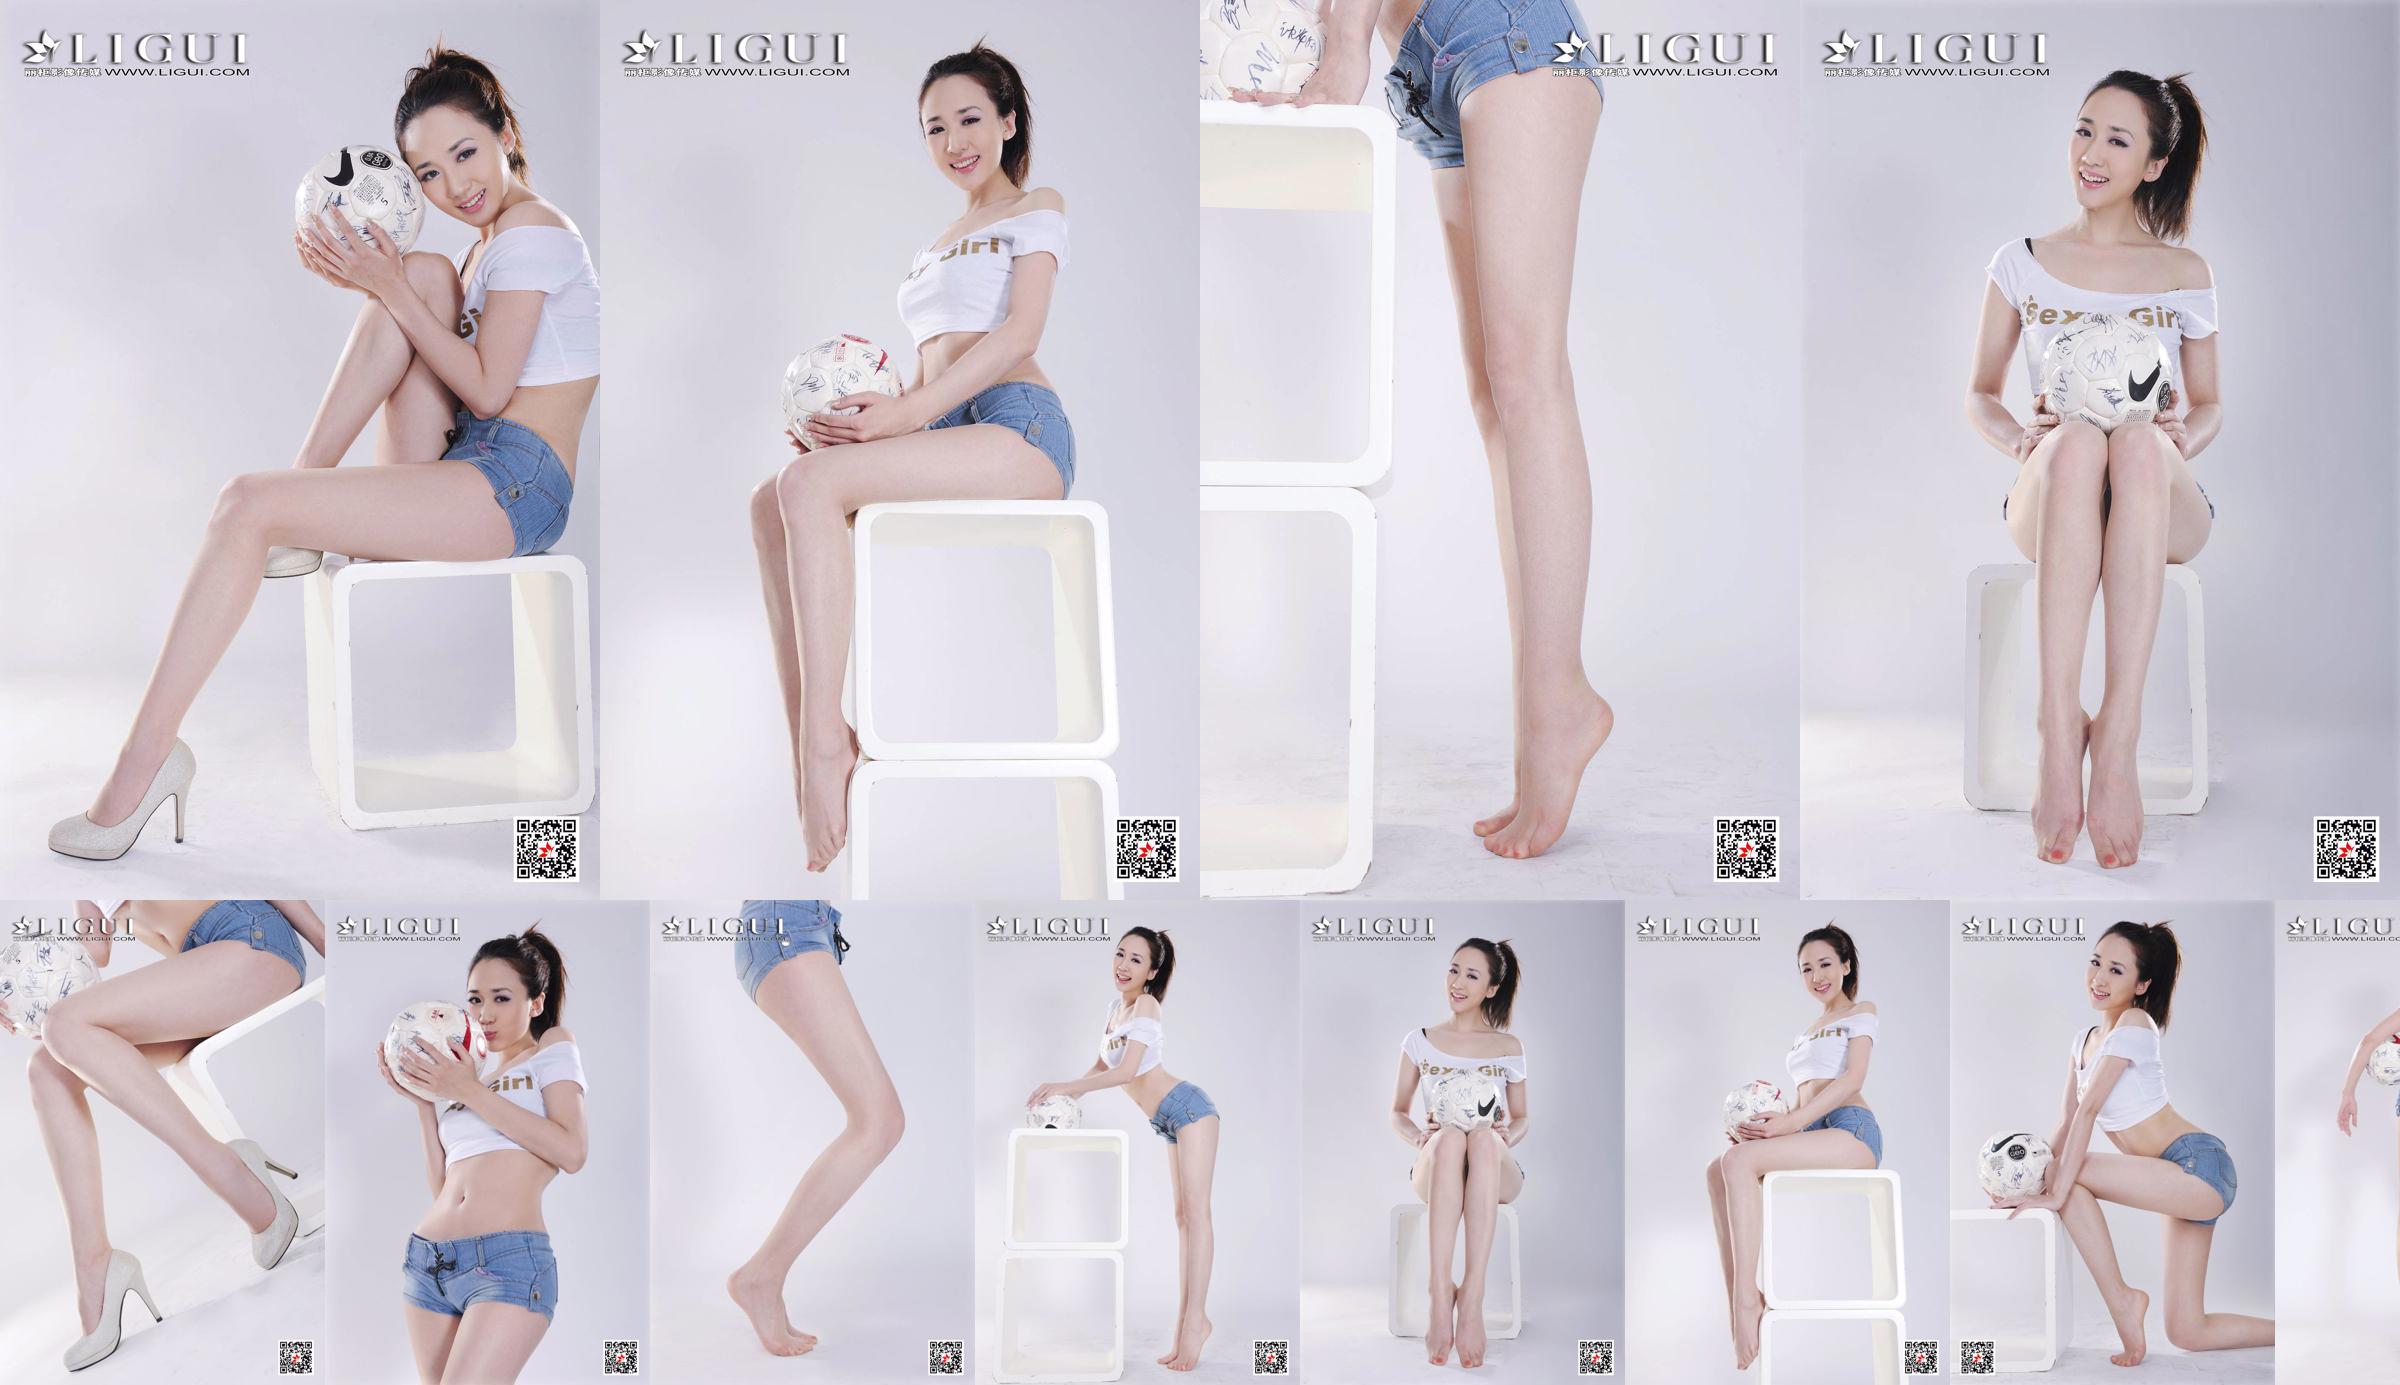 Model Qiu Chen "Super Short Hot Pants Football Girl" [LIGUI] No.8d25b9 Page 22